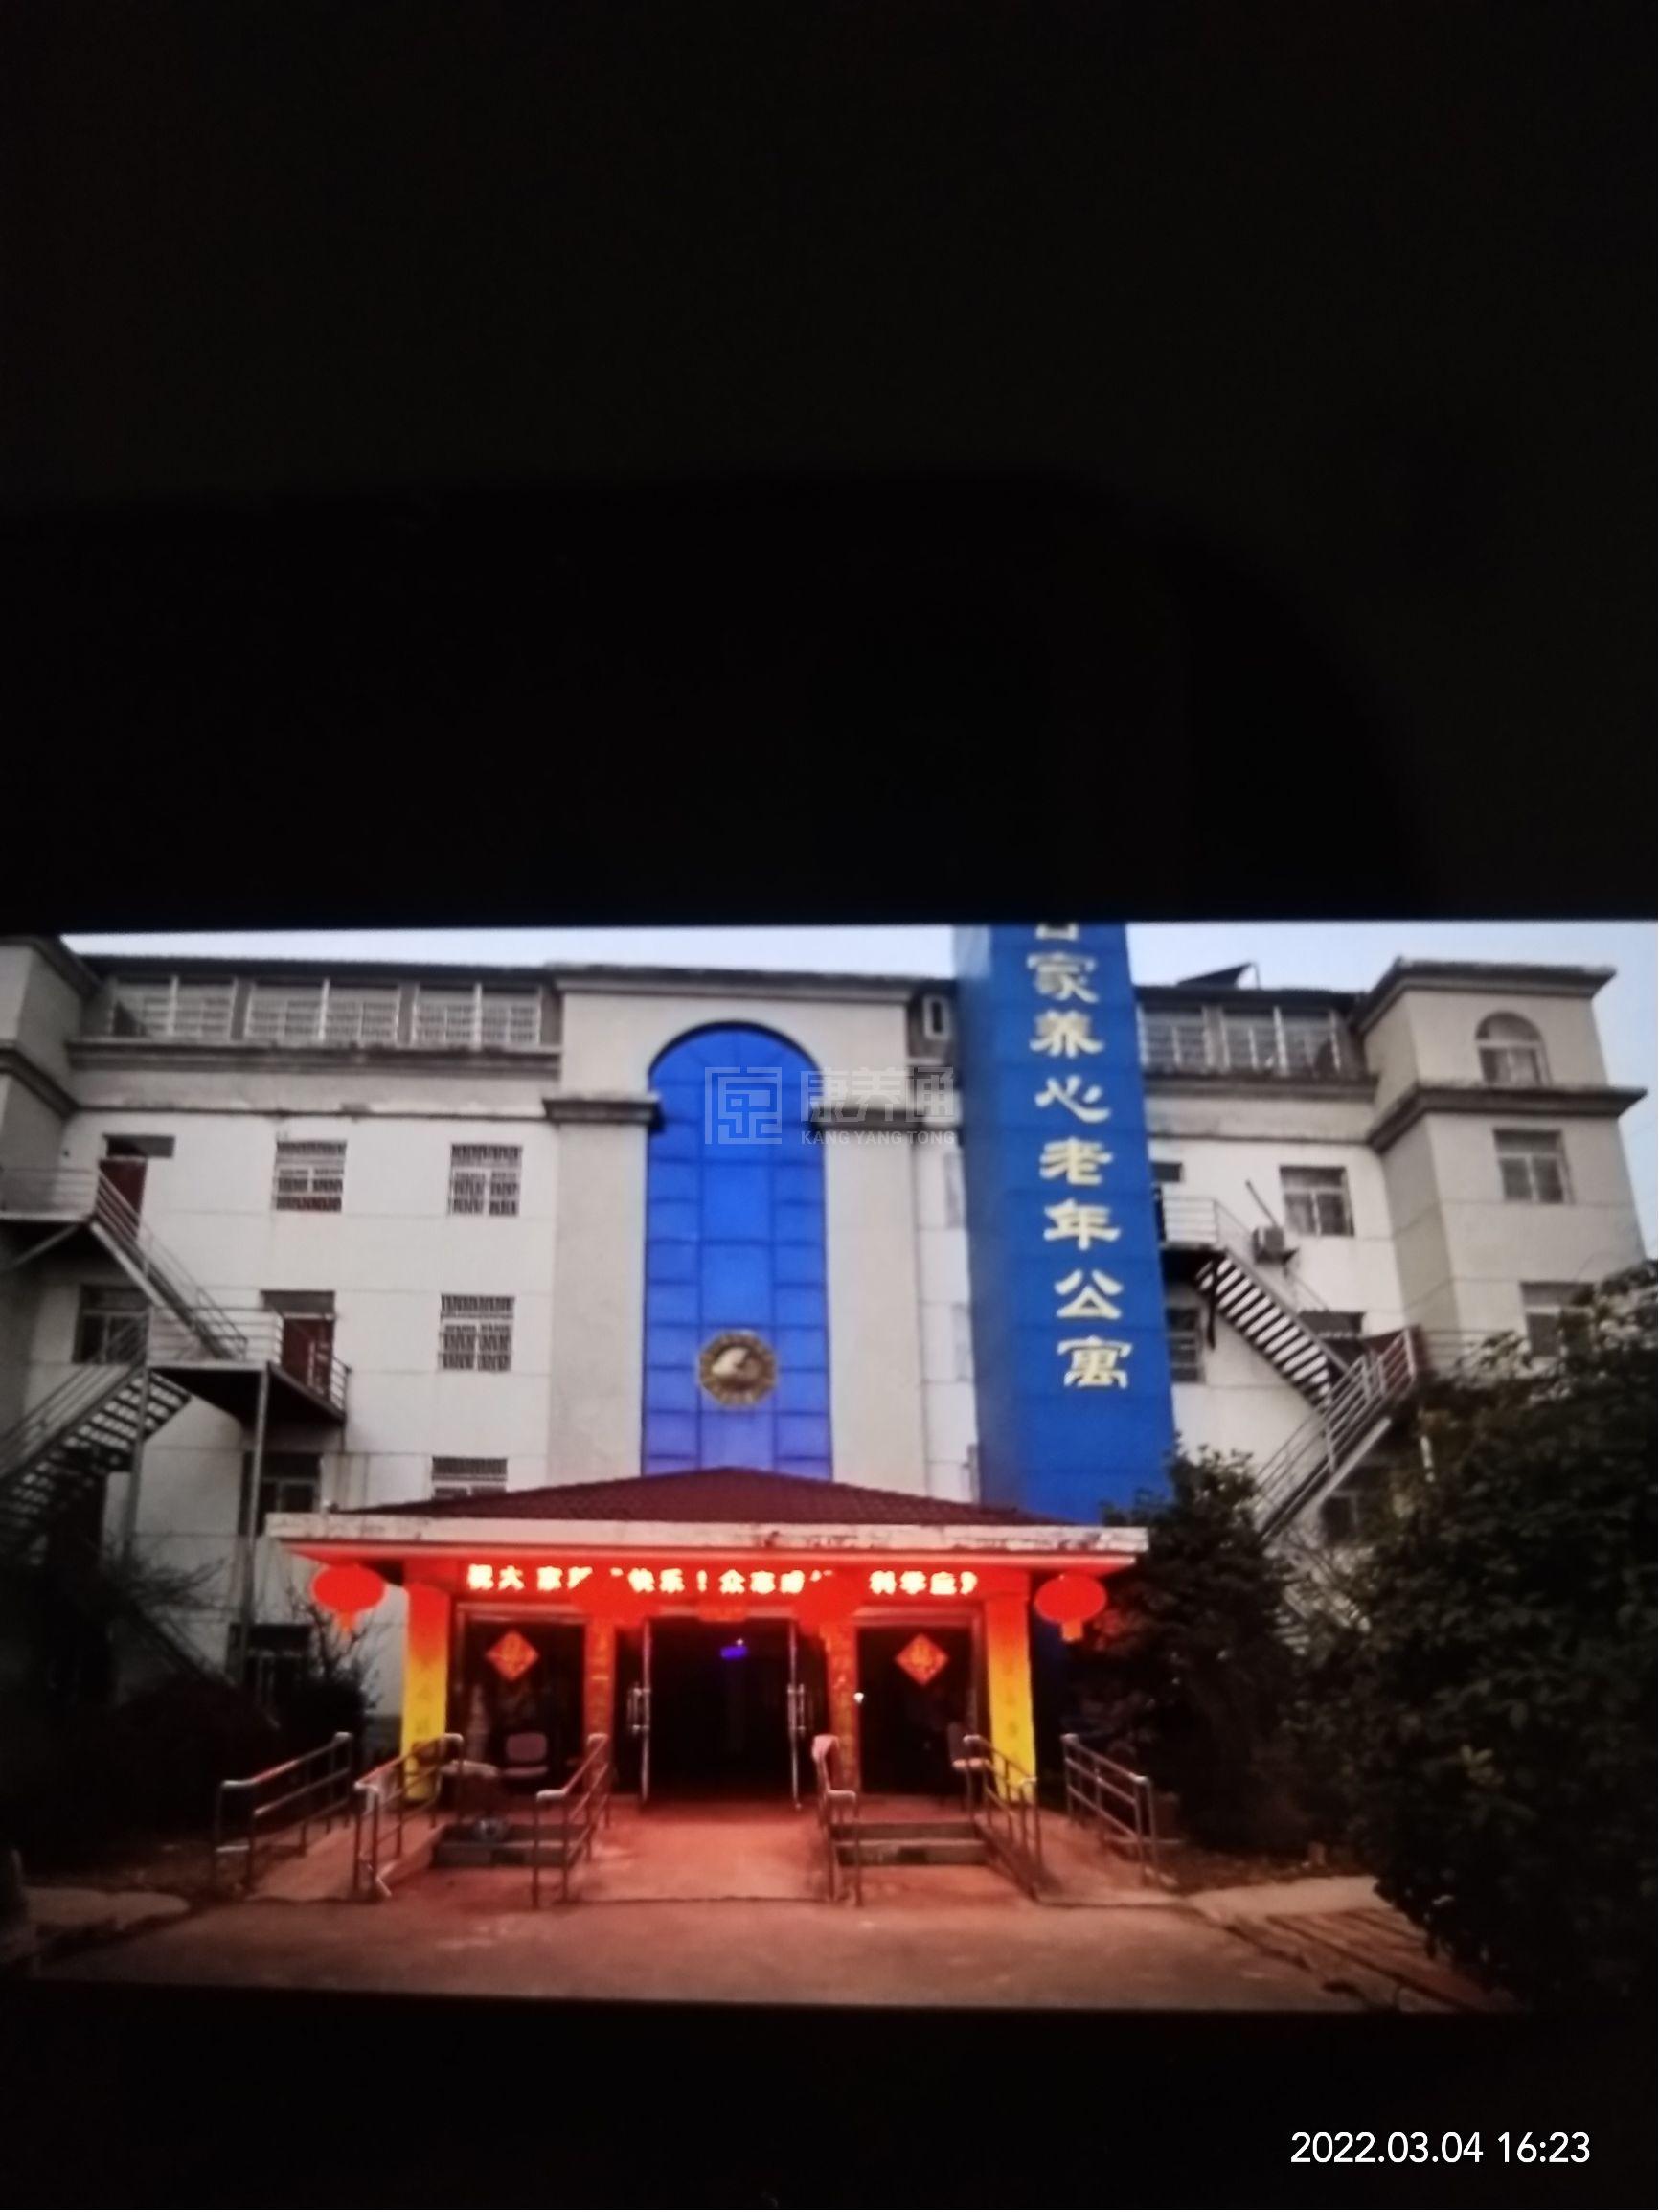 蚌埠市高新区合家养心老年公寓轮播图2